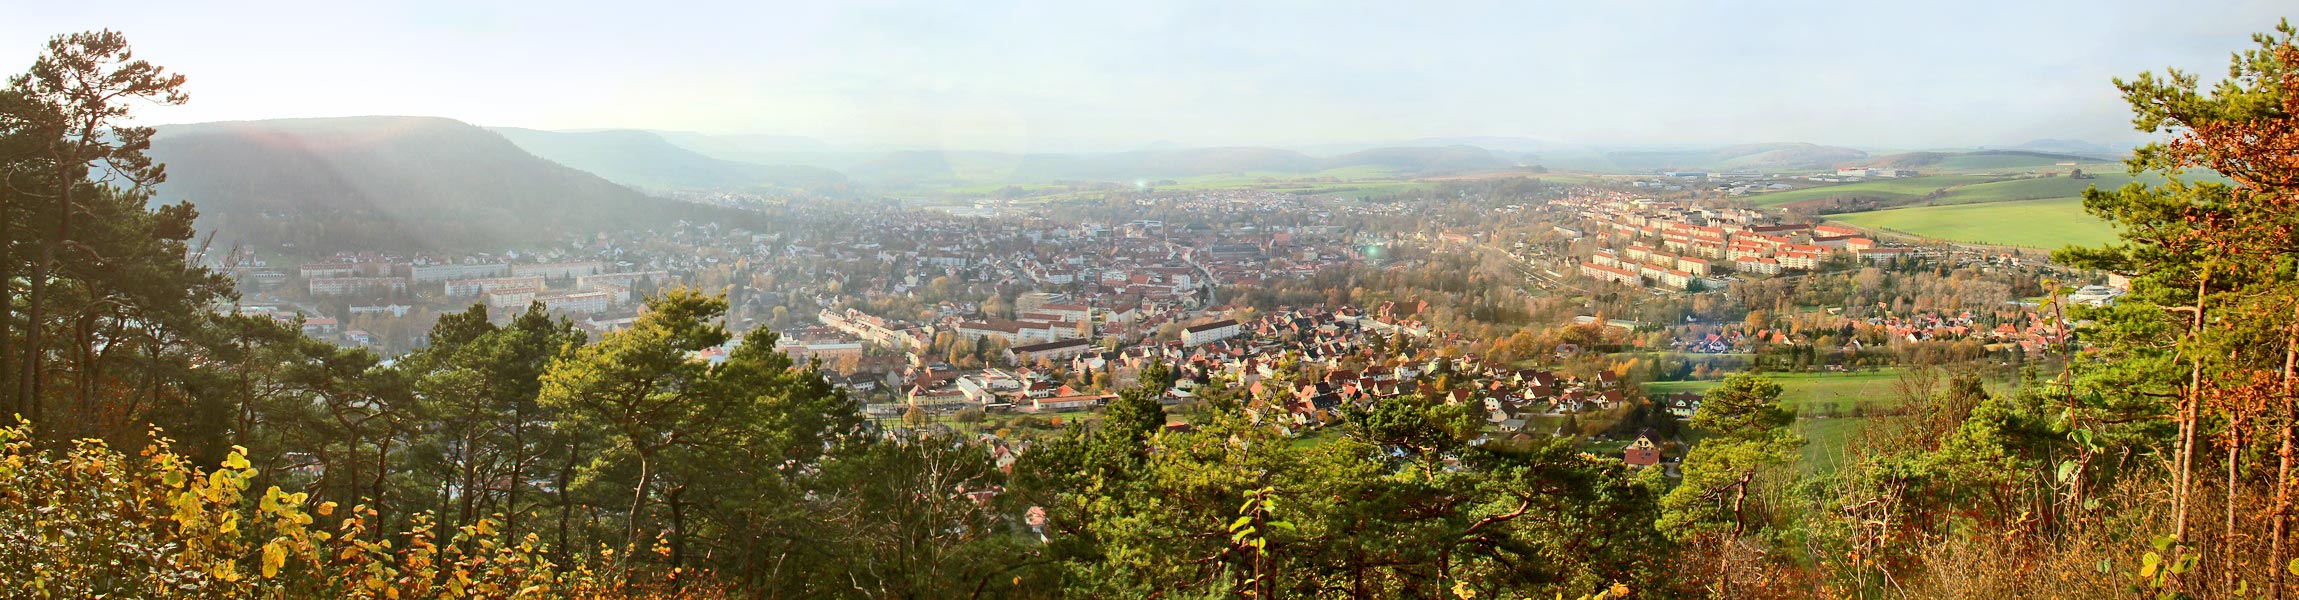 Heilbad Heiligenstadt - Blick vom Dnkreuz